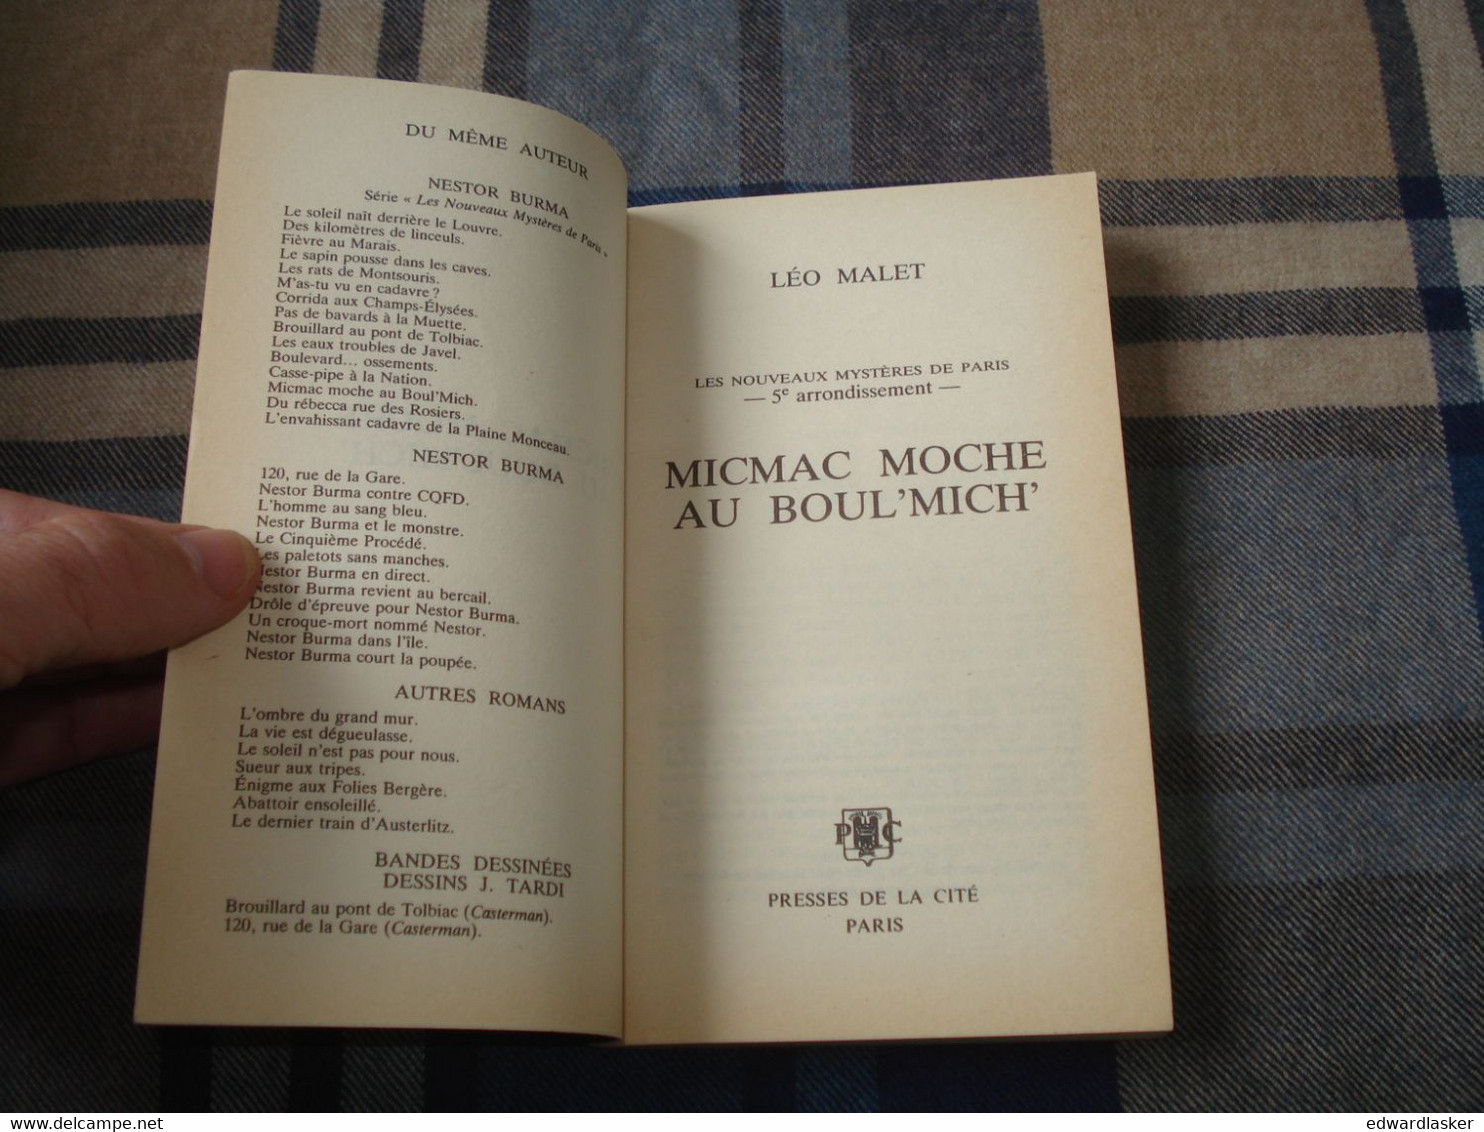 NESTOR BURMA : MICMAC MOCHE AU BOUL'MICH - Léo MALET - Couv. Ill. TARDI - PdlC 1990 - Leo Malet